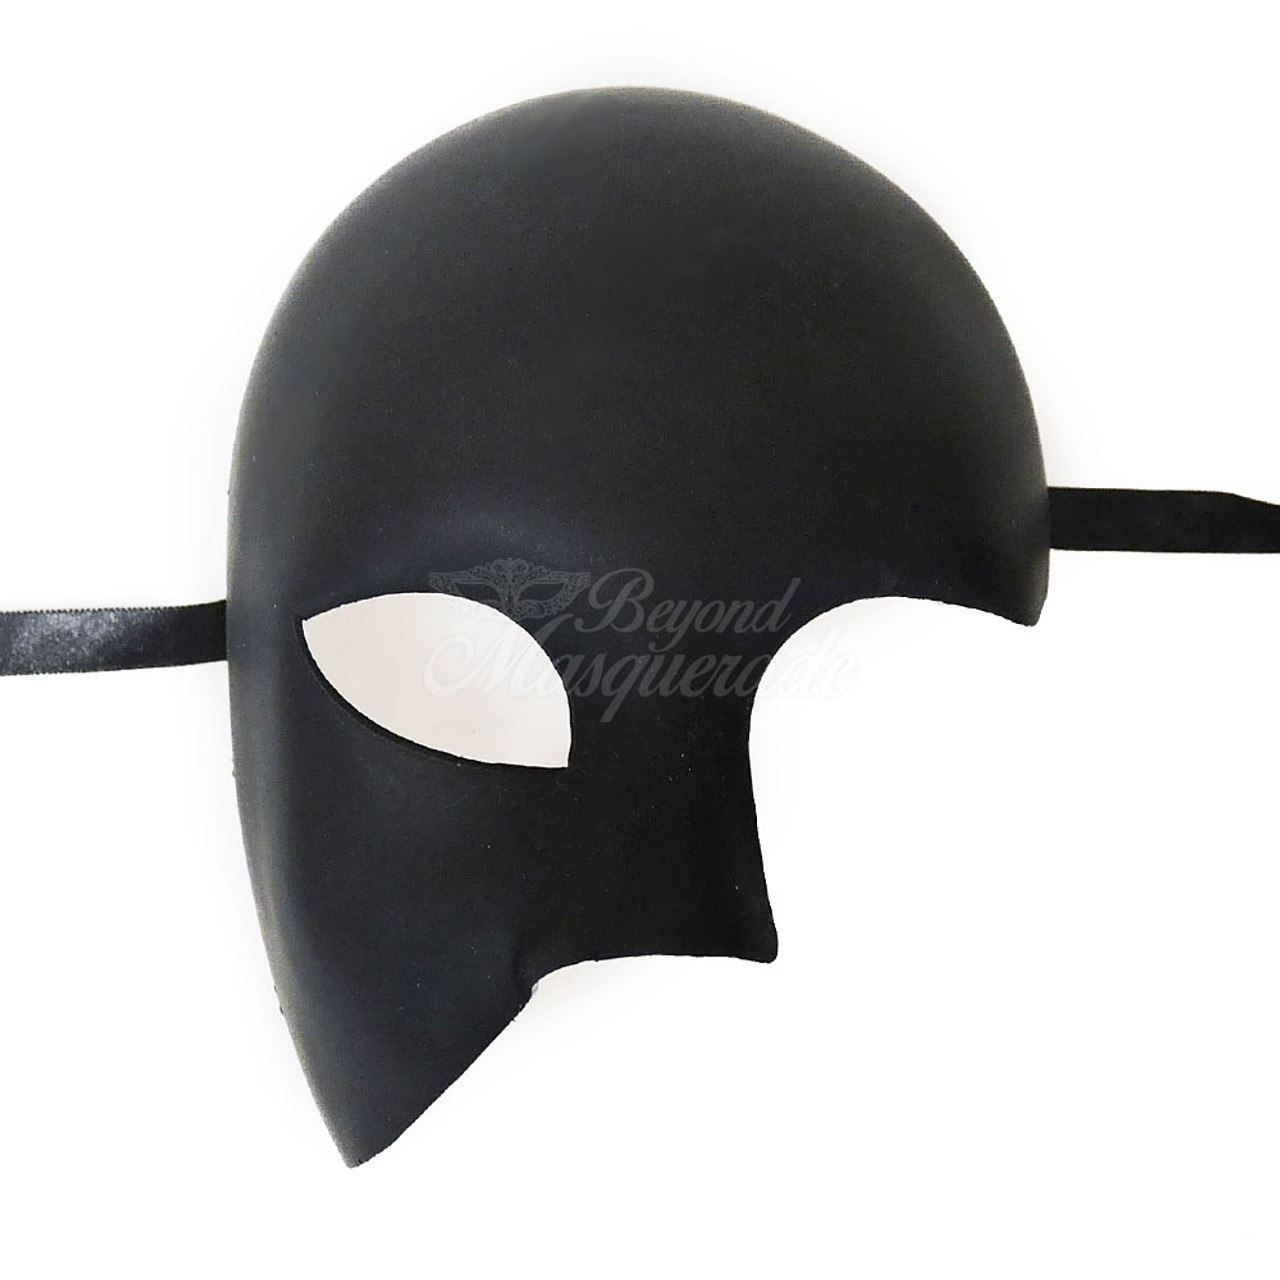 Masquerade Masks Blank Unpainted DIY Masquerade Mask